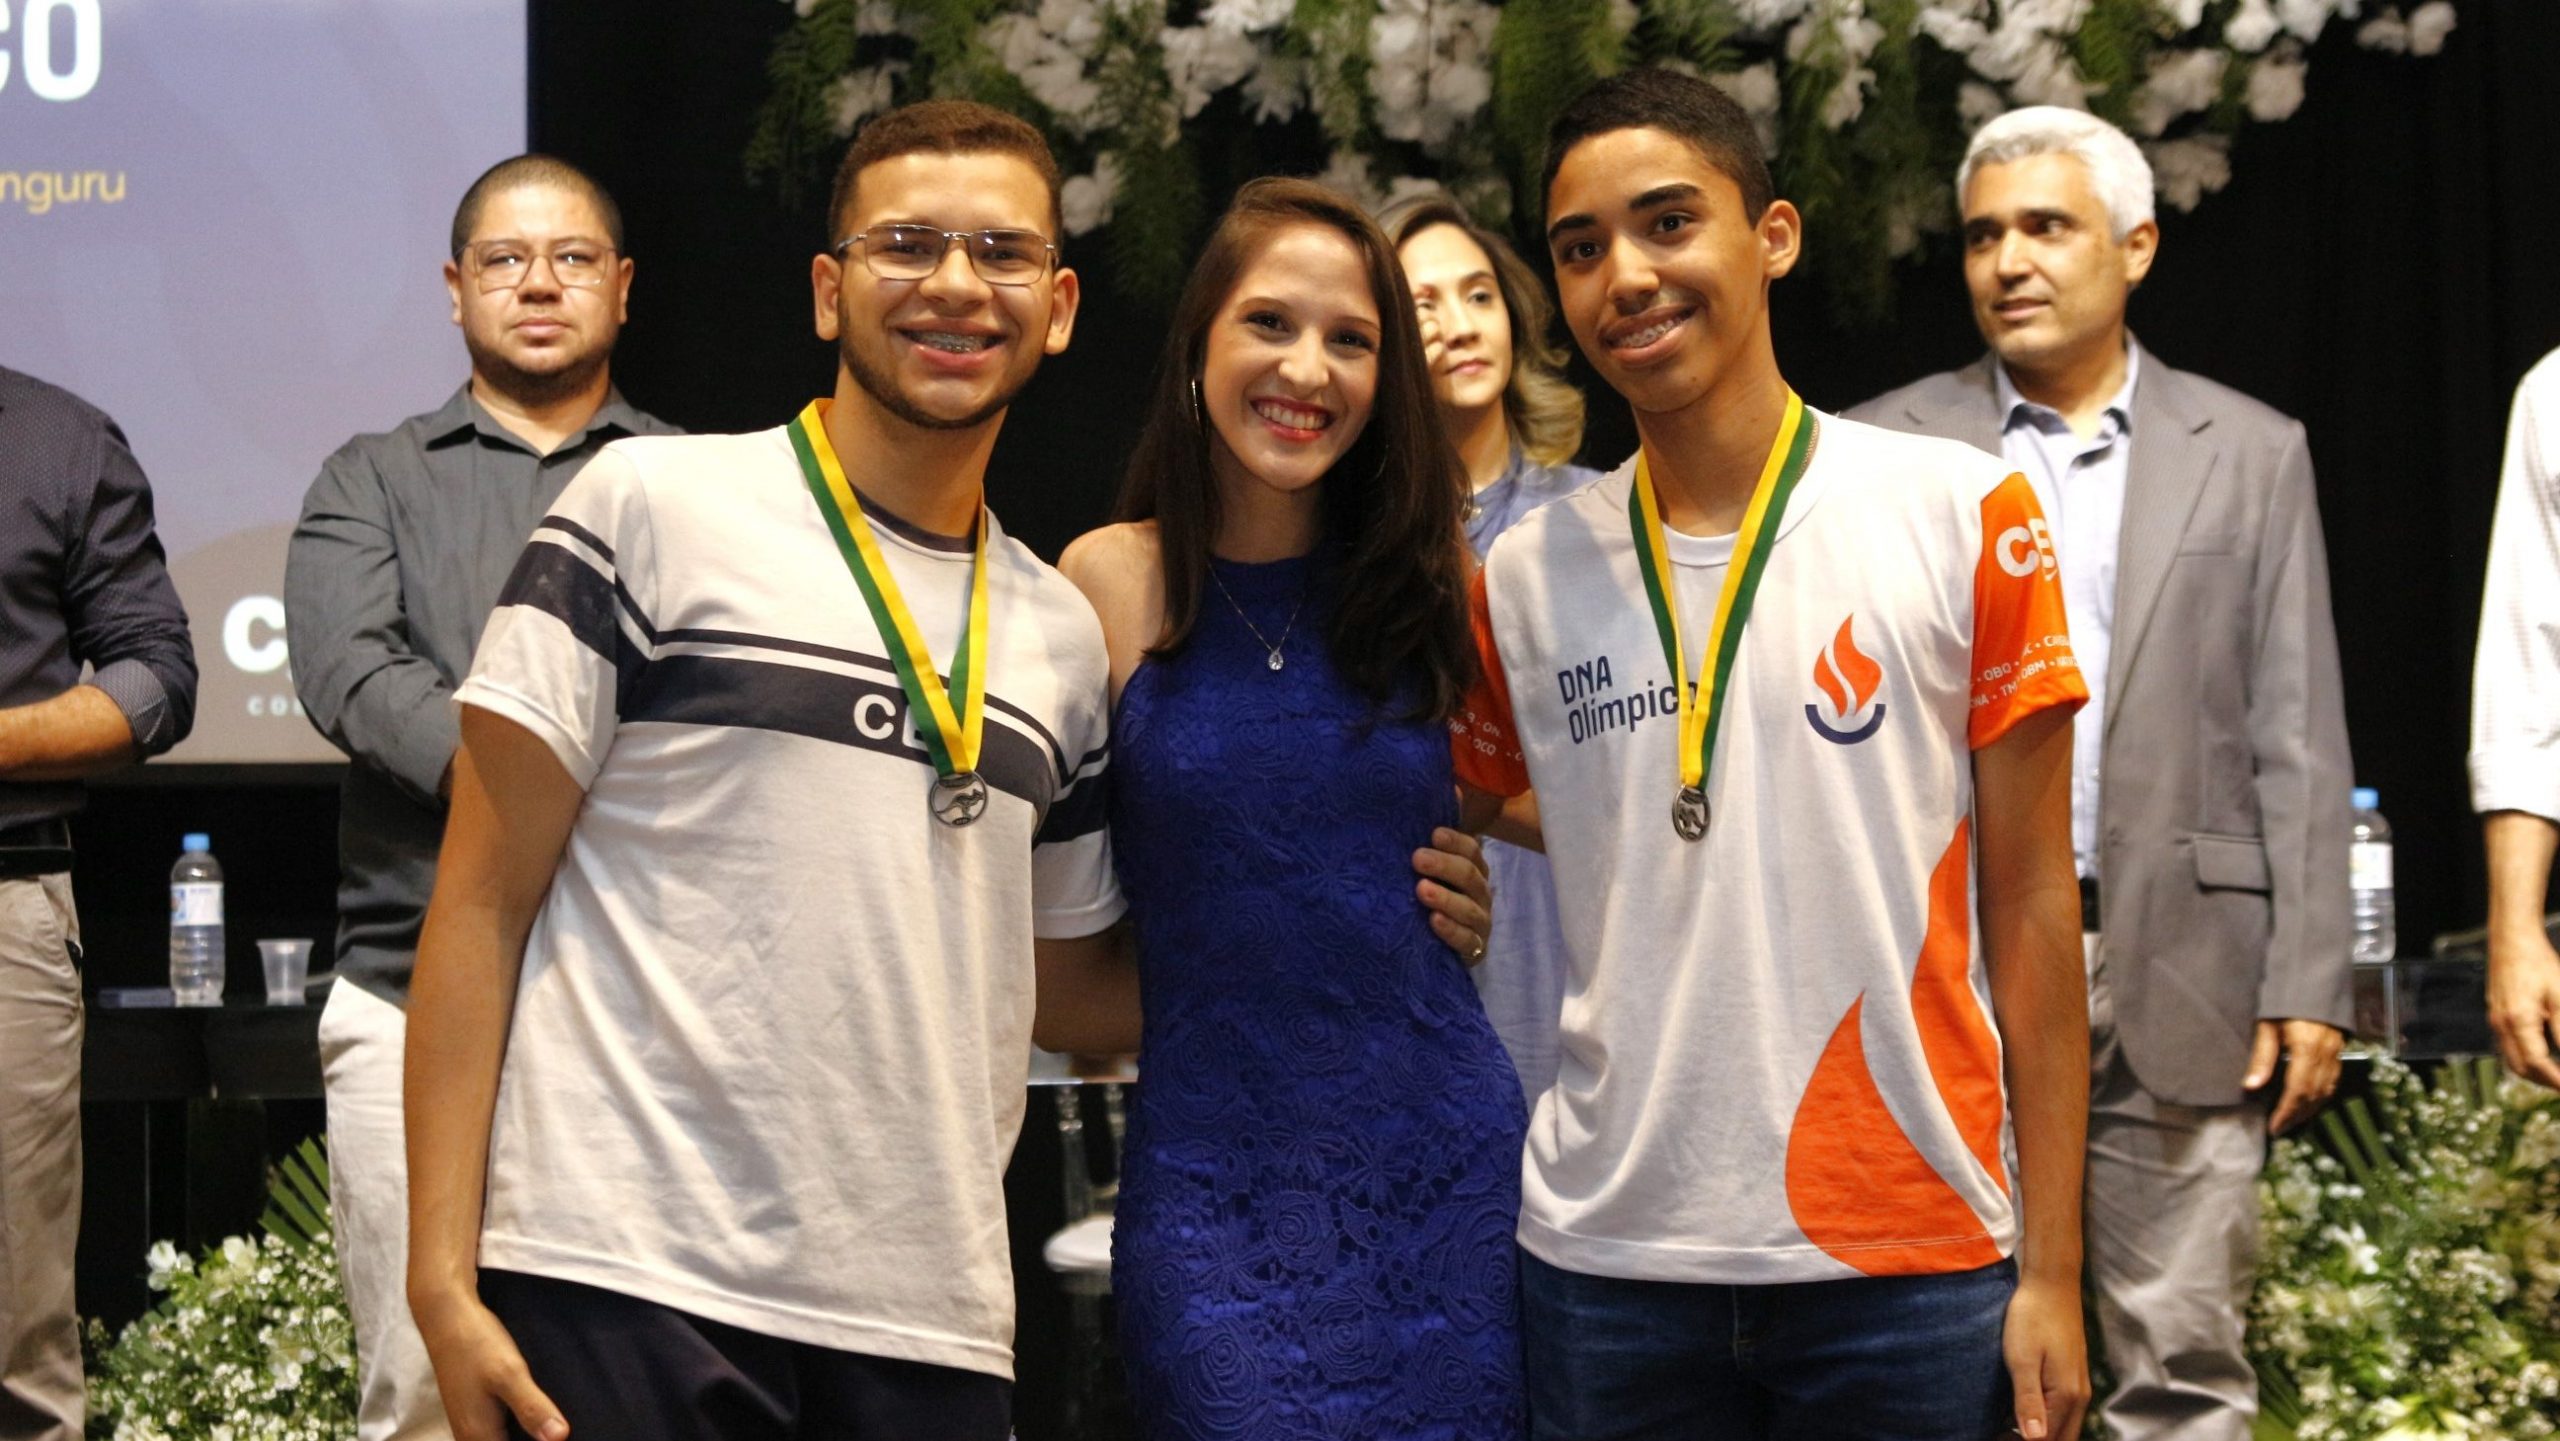 DNA Olímpico: turmas reúnem alunos apaixonados por competições de conhecimento